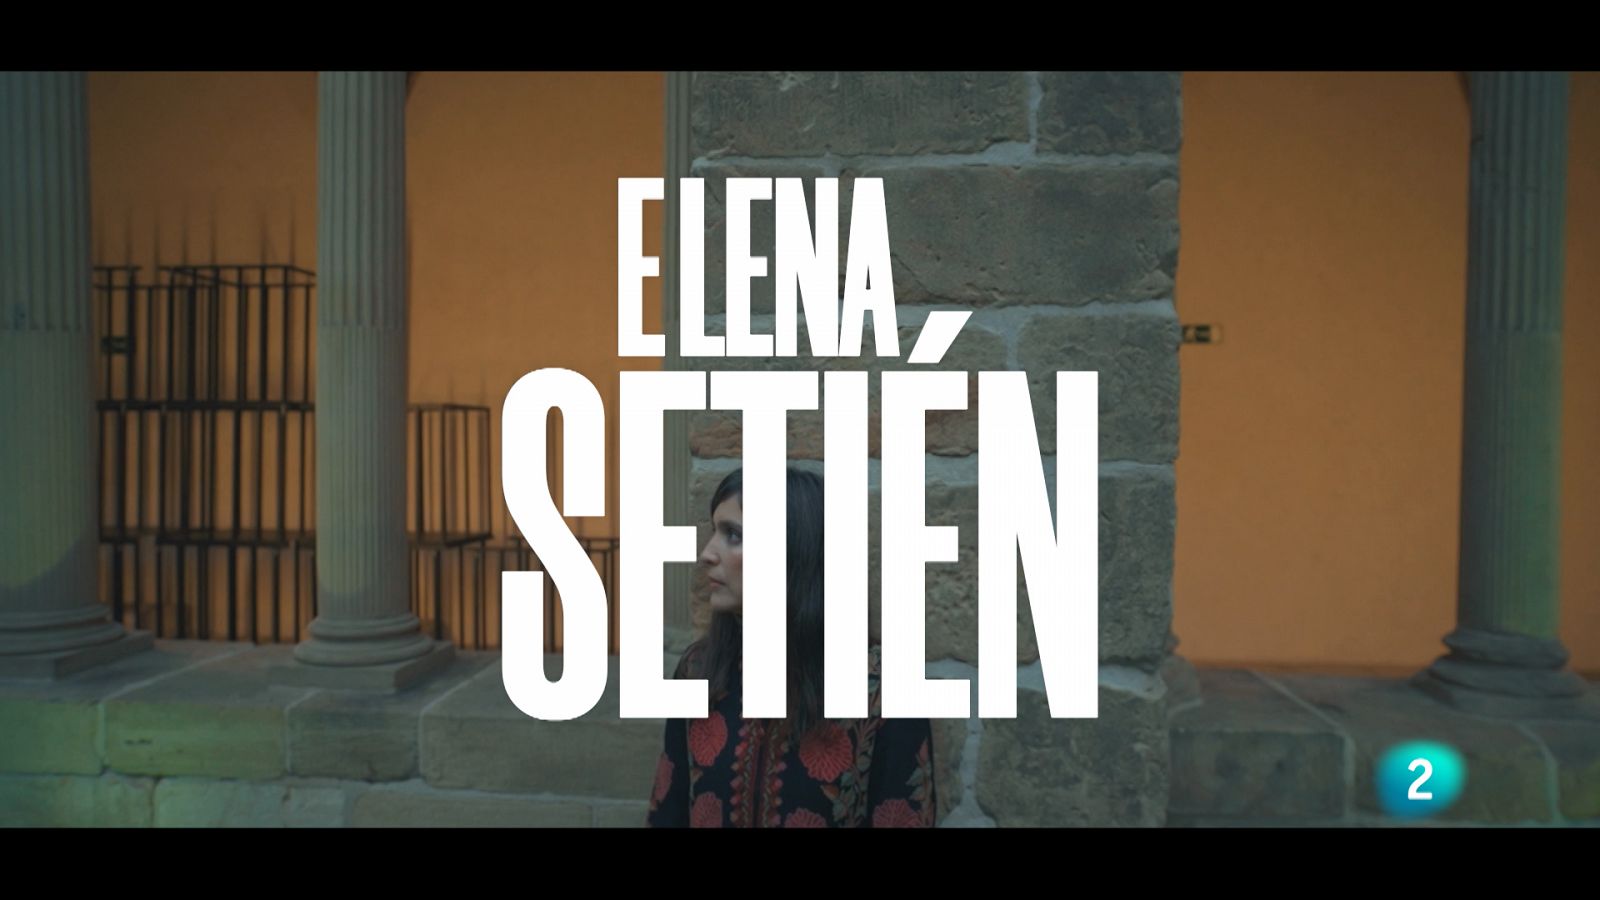 Un país para escucharlo - Escuchando San Sebastián - Elena Setién "From the time tree" 